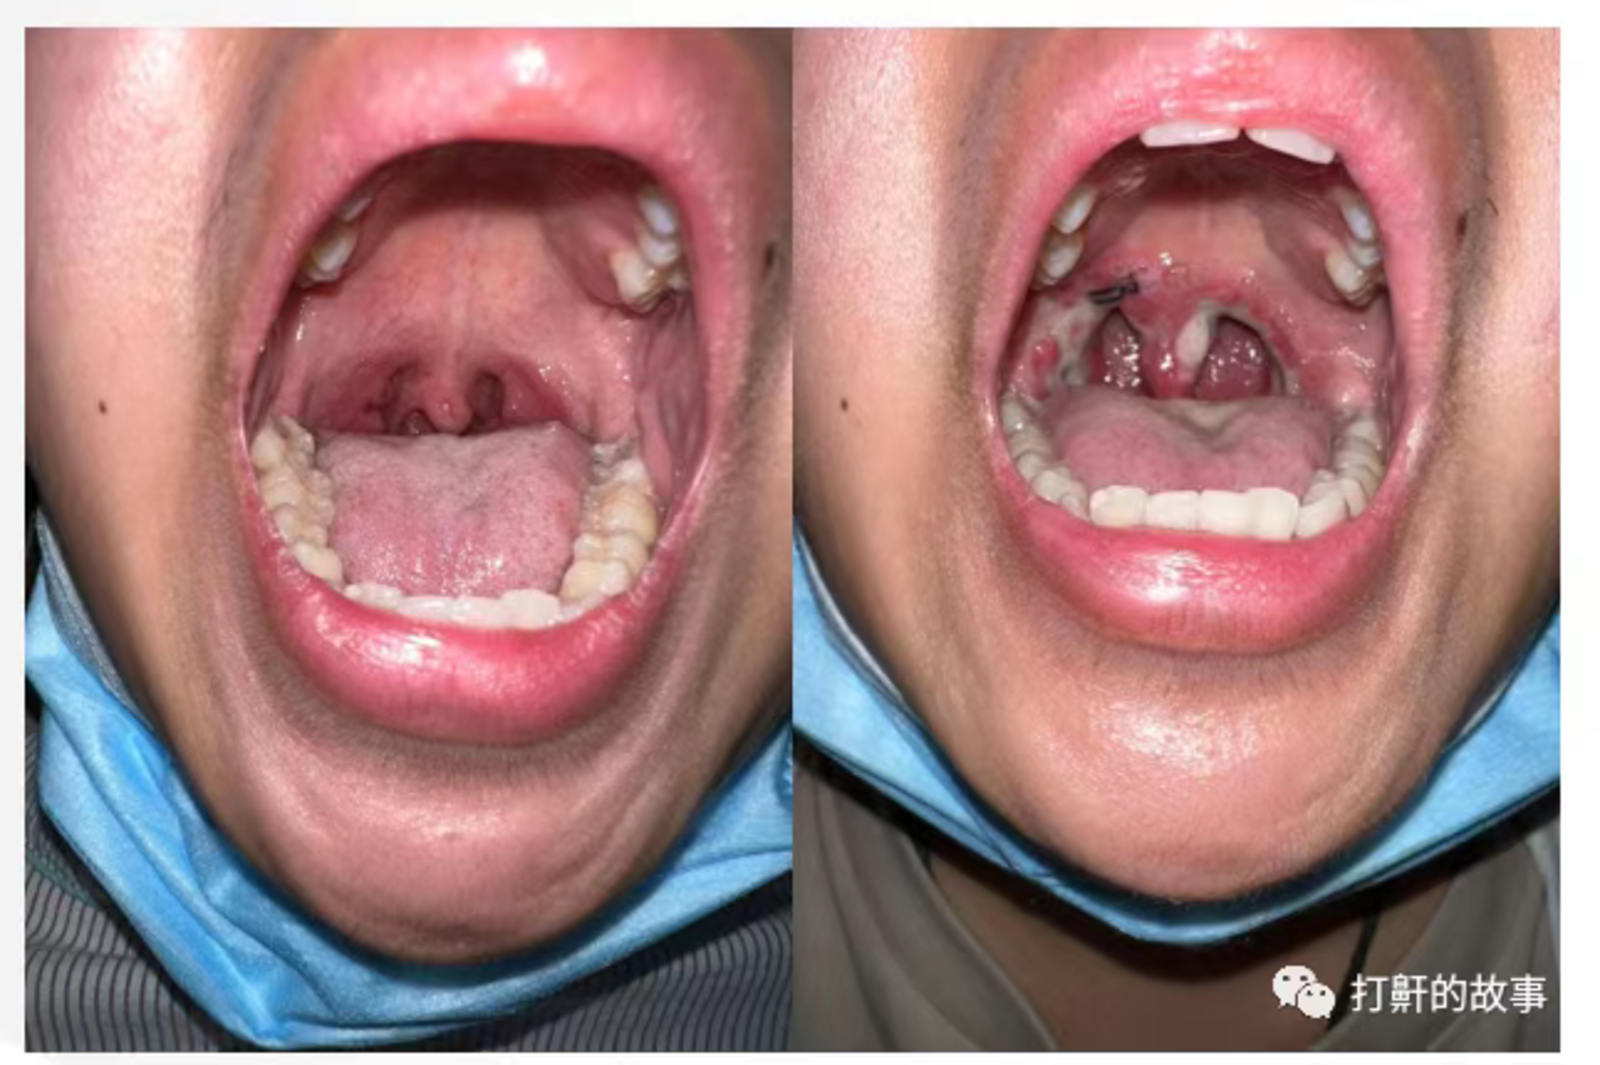 狭窄)成人:最常见的狭窄部位在口咽平面,包括扁桃体肥大,软腭肥厚下垂